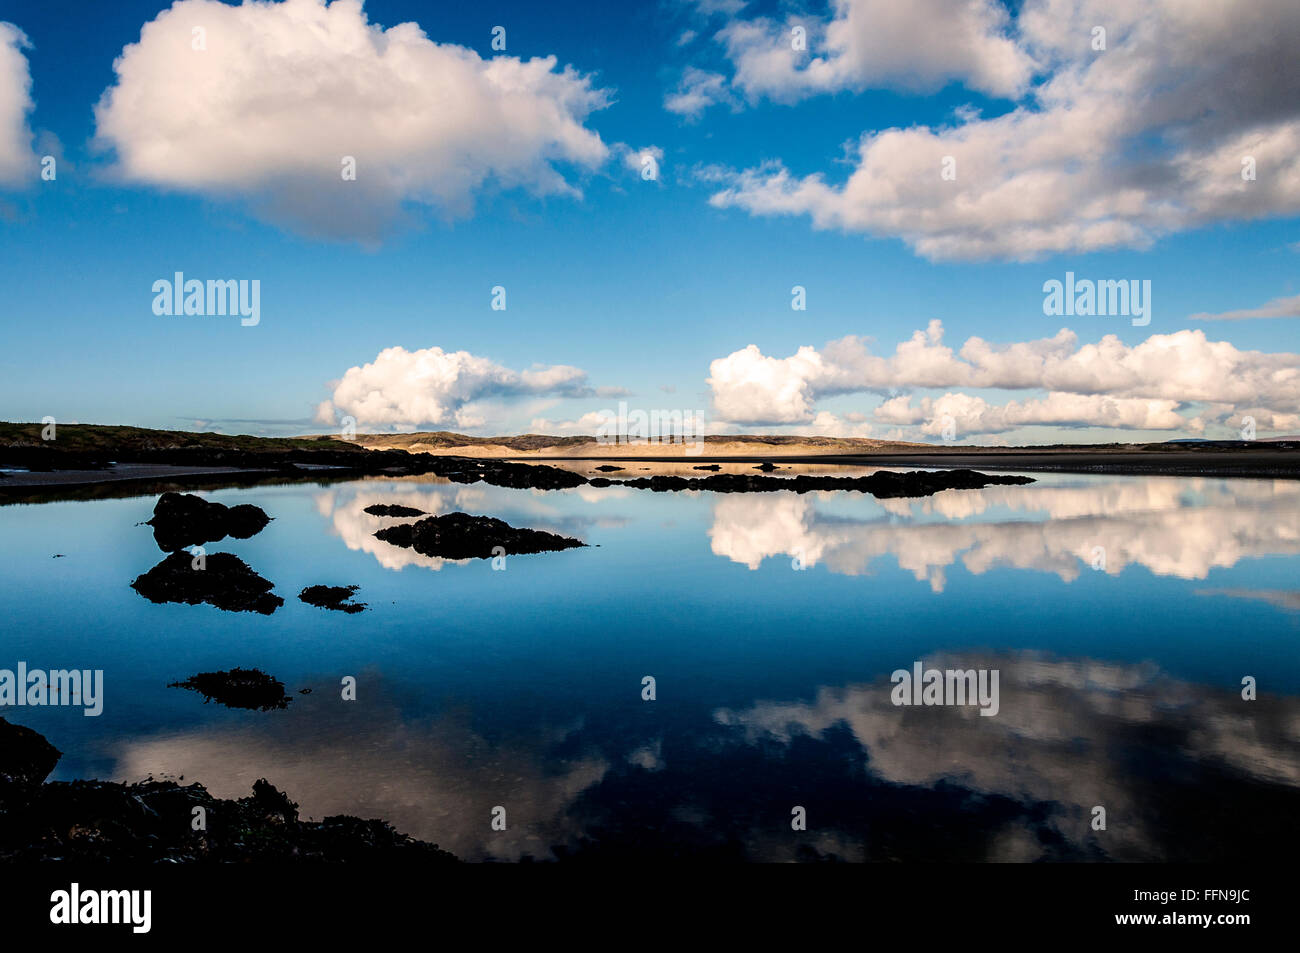 Façon sauvage de l'Atlantique à Ardara, comté de Donegal en Irlande. Rencontre de l'océan calme nuage surréaliste Banque D'Images